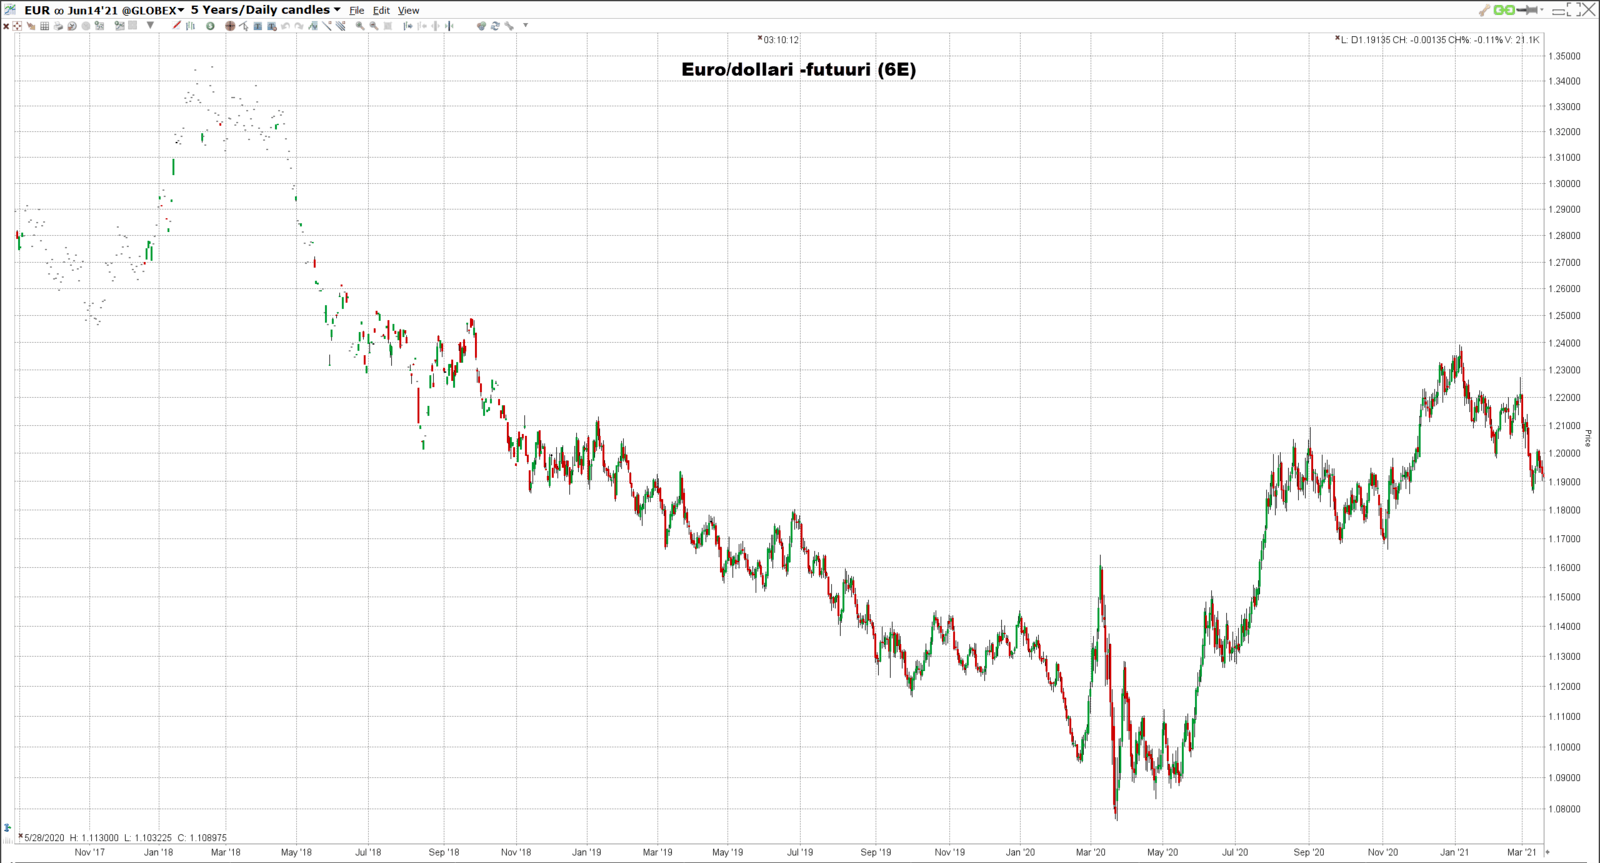 Euro/dollari -futuurin hintakuvaaja